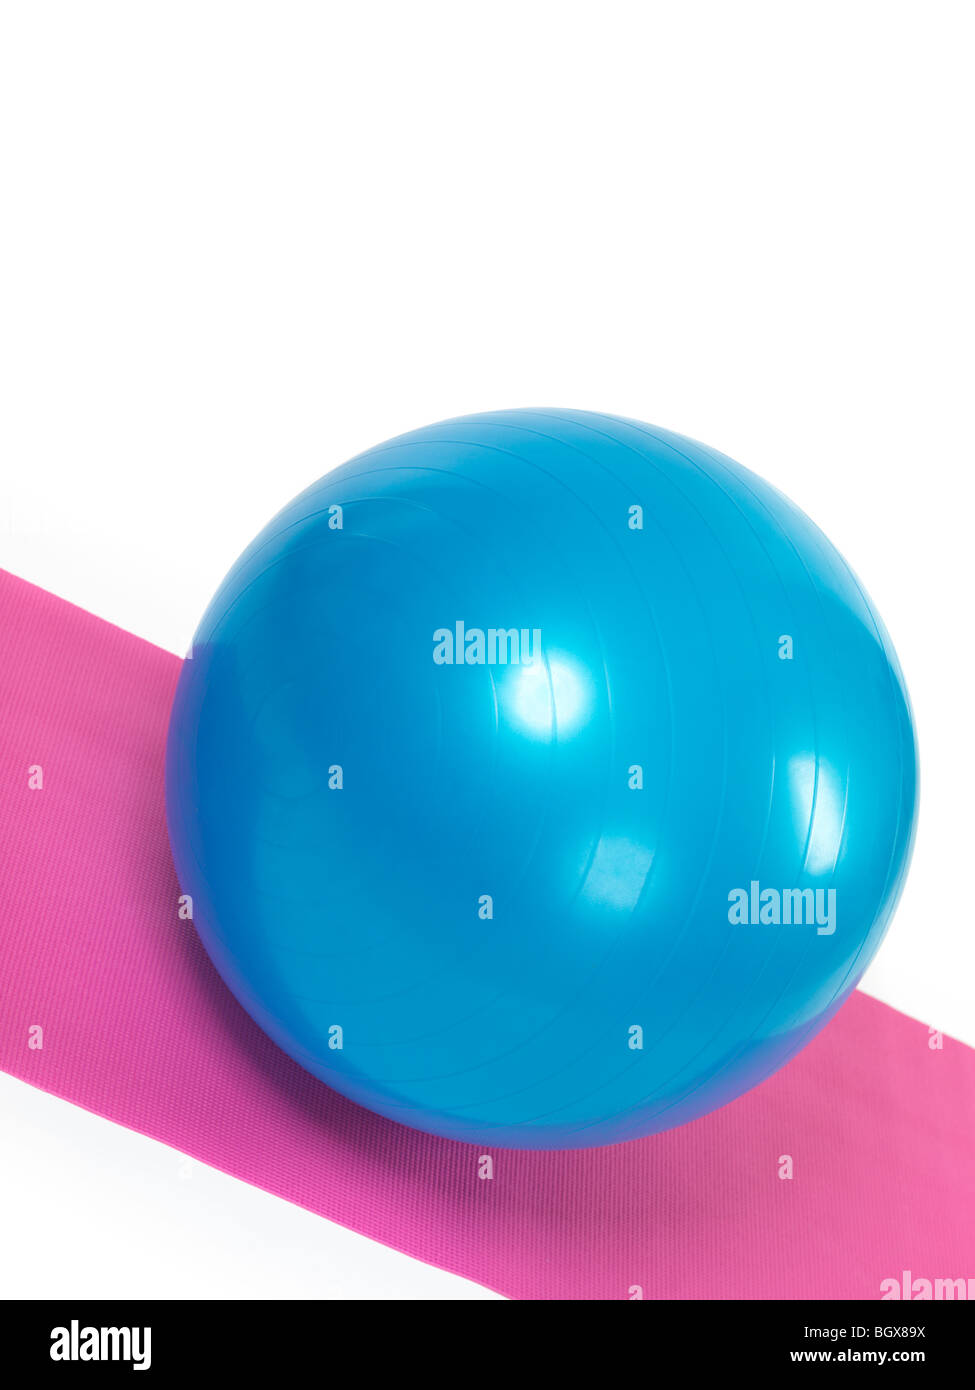 Blaue Fitnessball auf lila Matte isoliert auf weißem Hintergrund Stockfoto